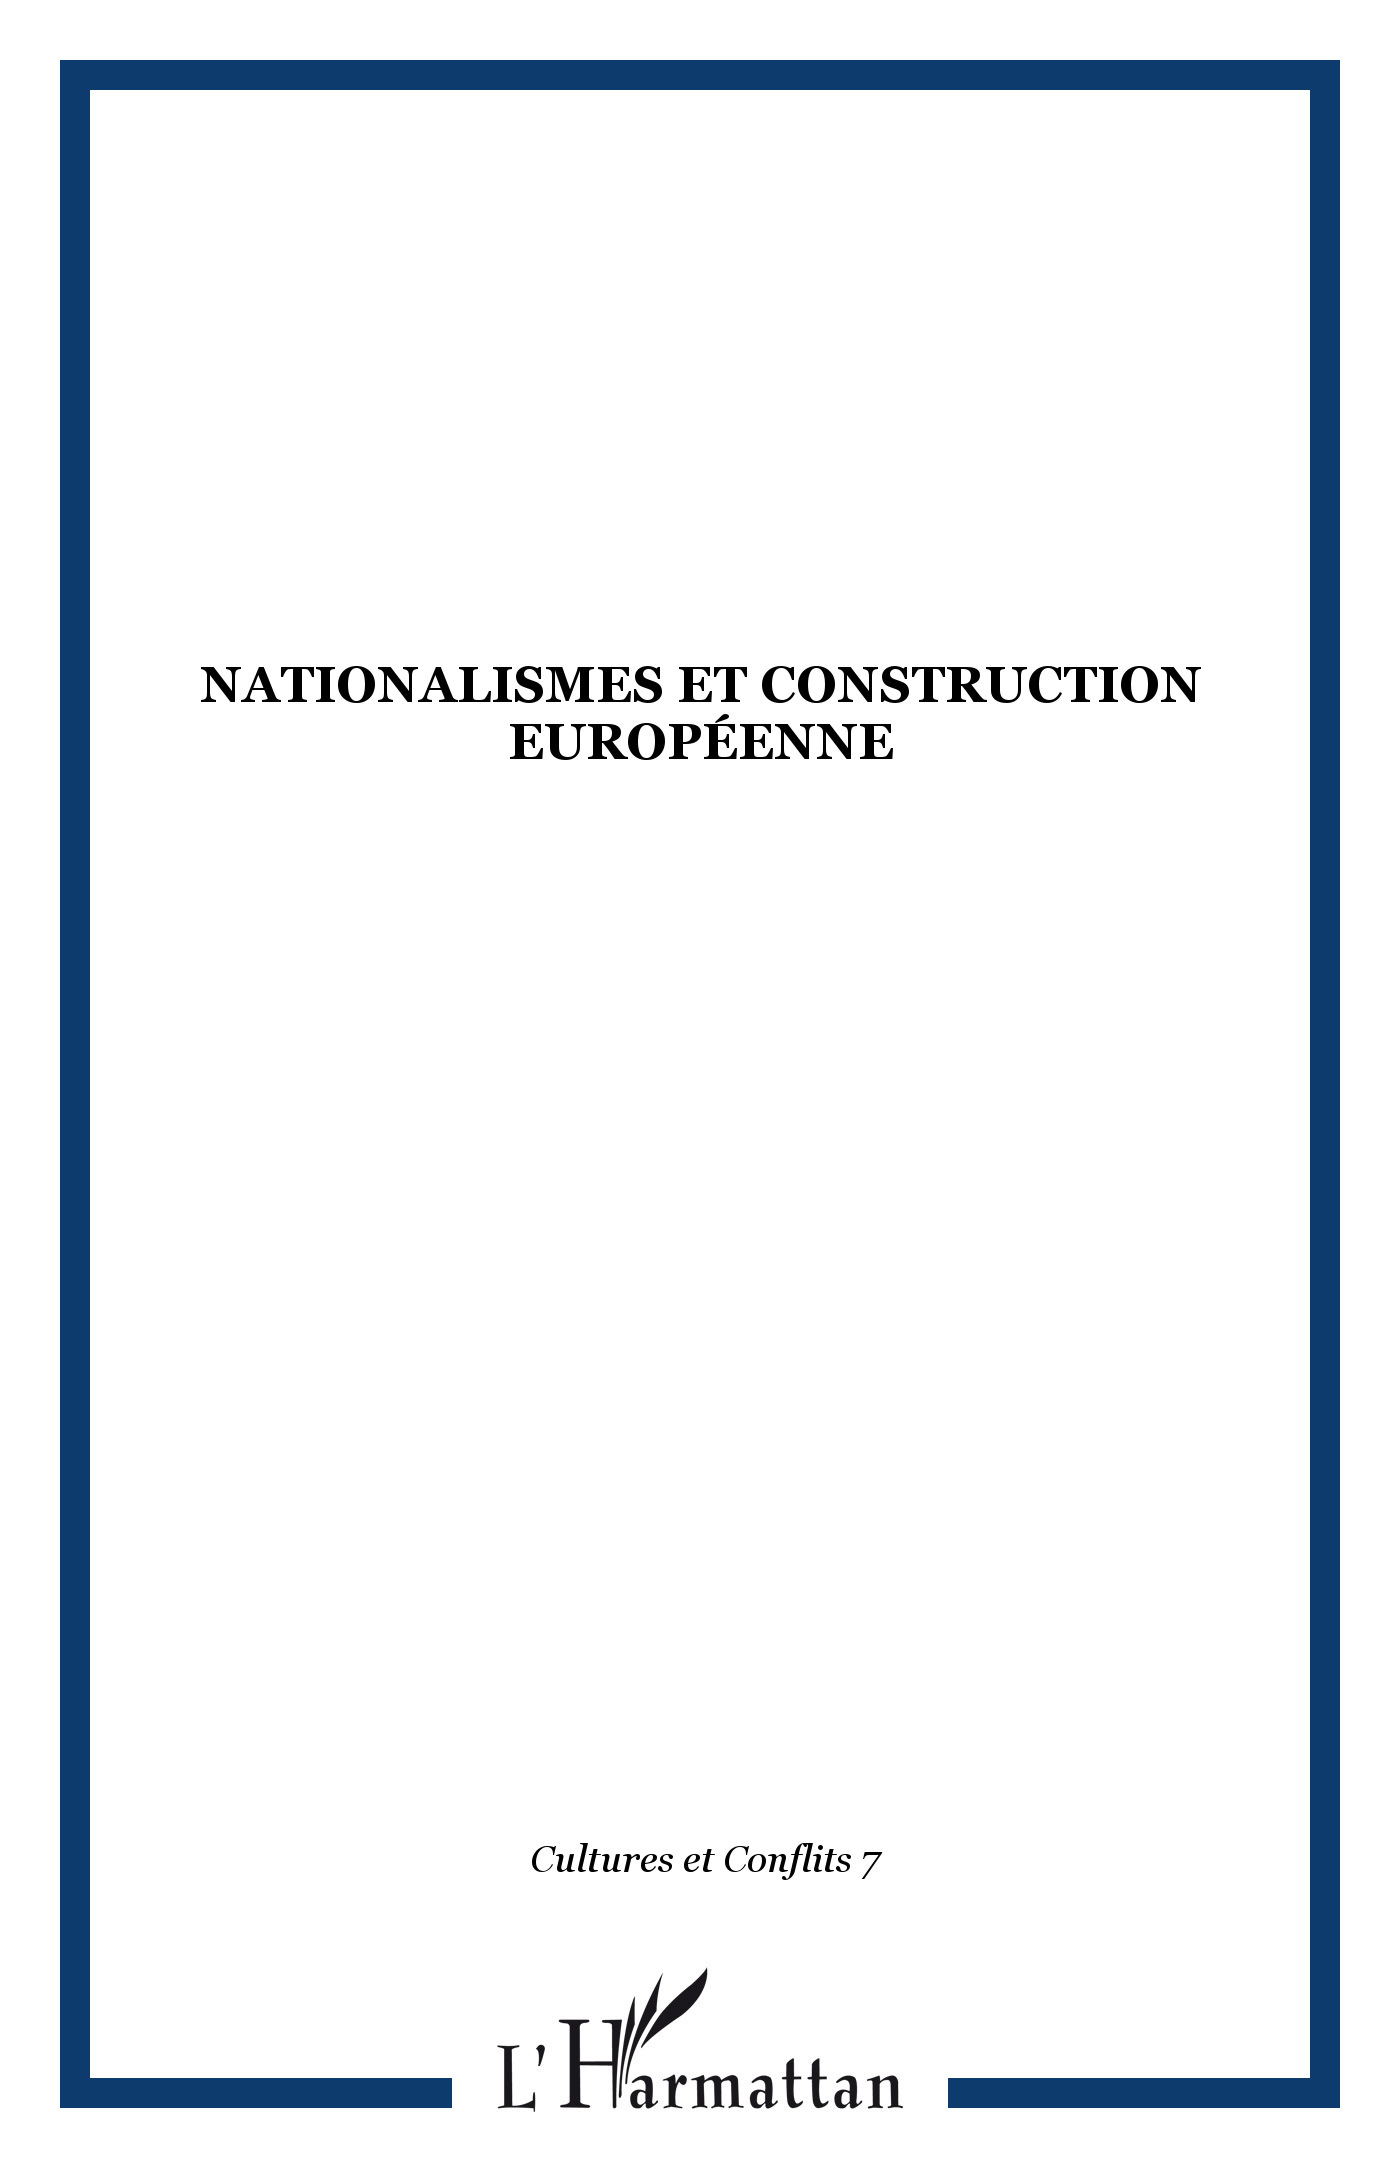 Cultures et Conflits, Nationalismes et construction européenne (9782738418777-front-cover)